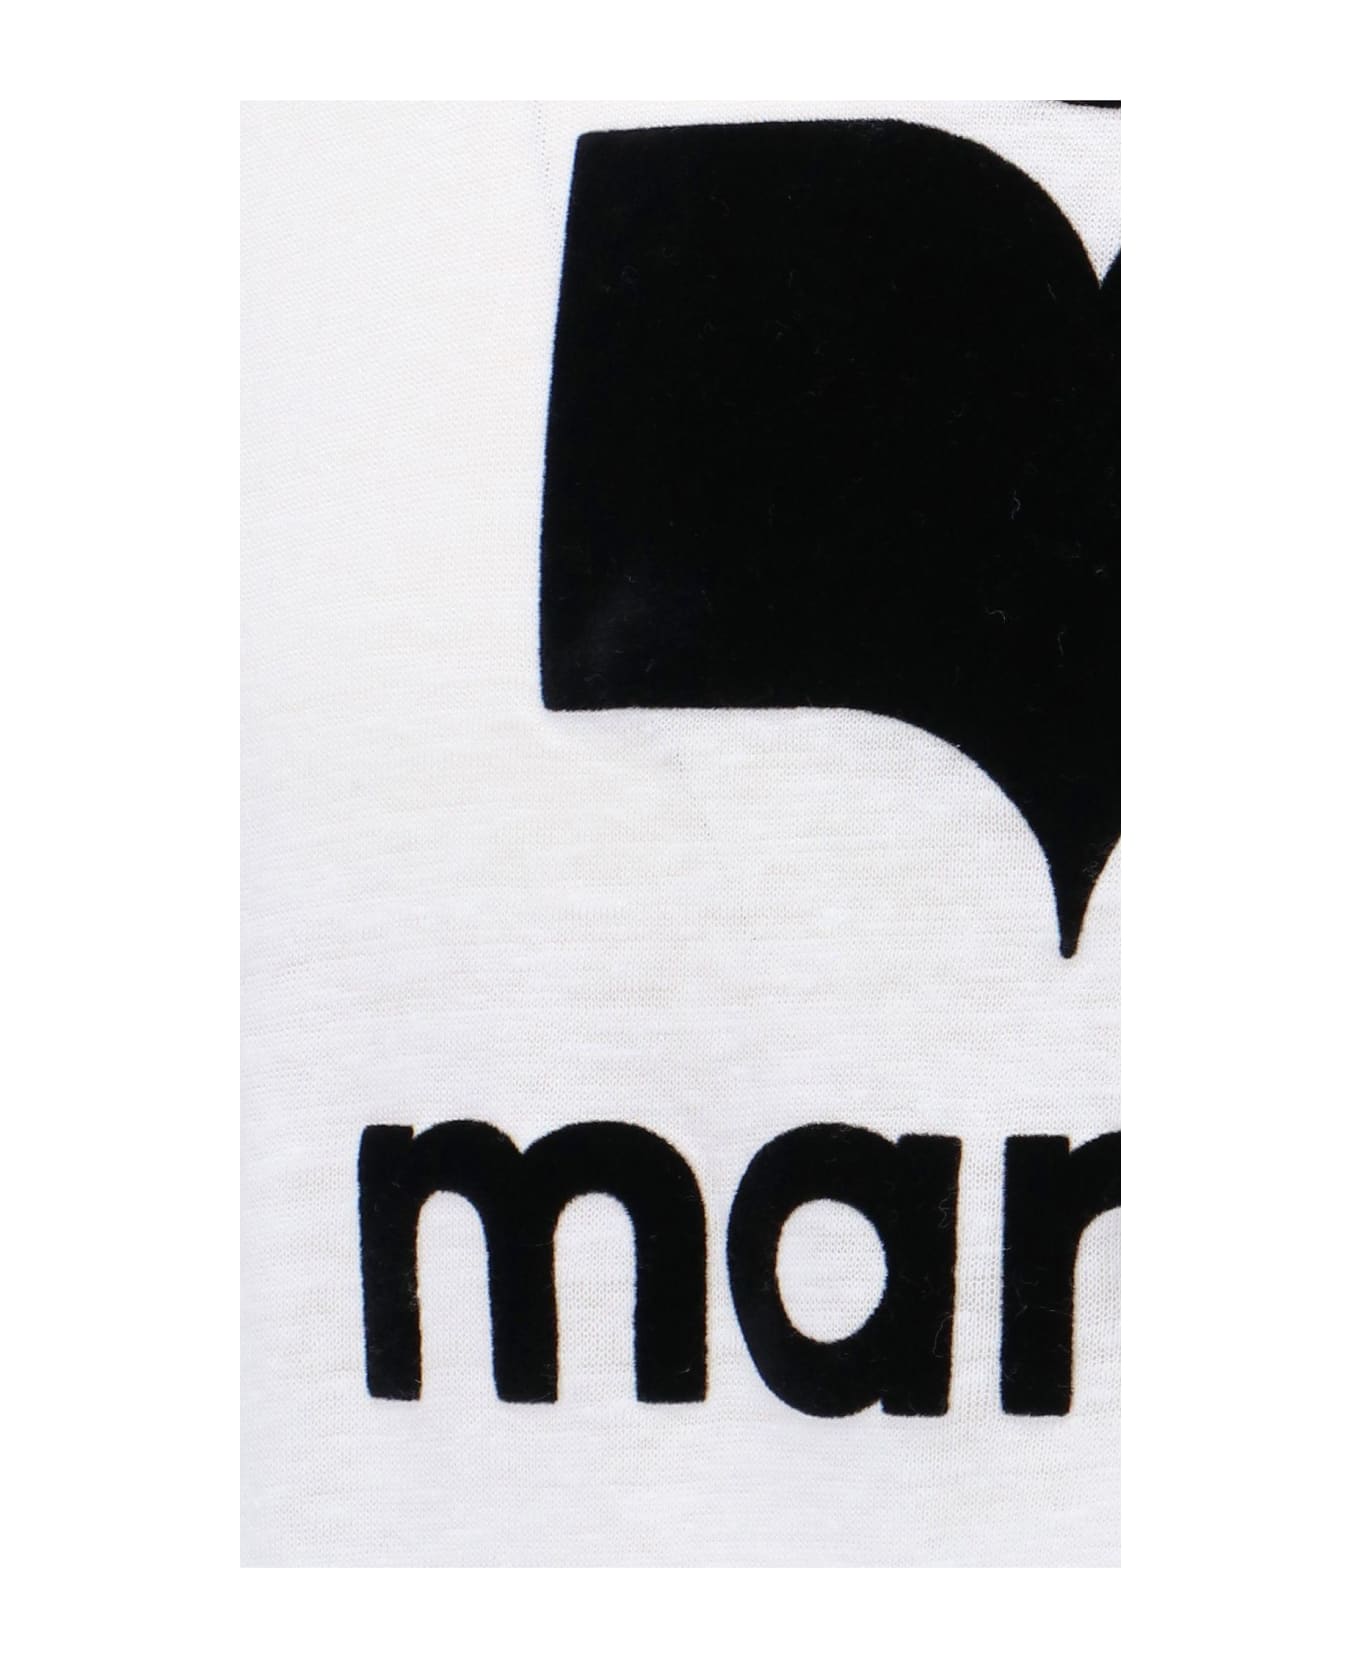 Isabel Marant 'karman' T-shirt - White